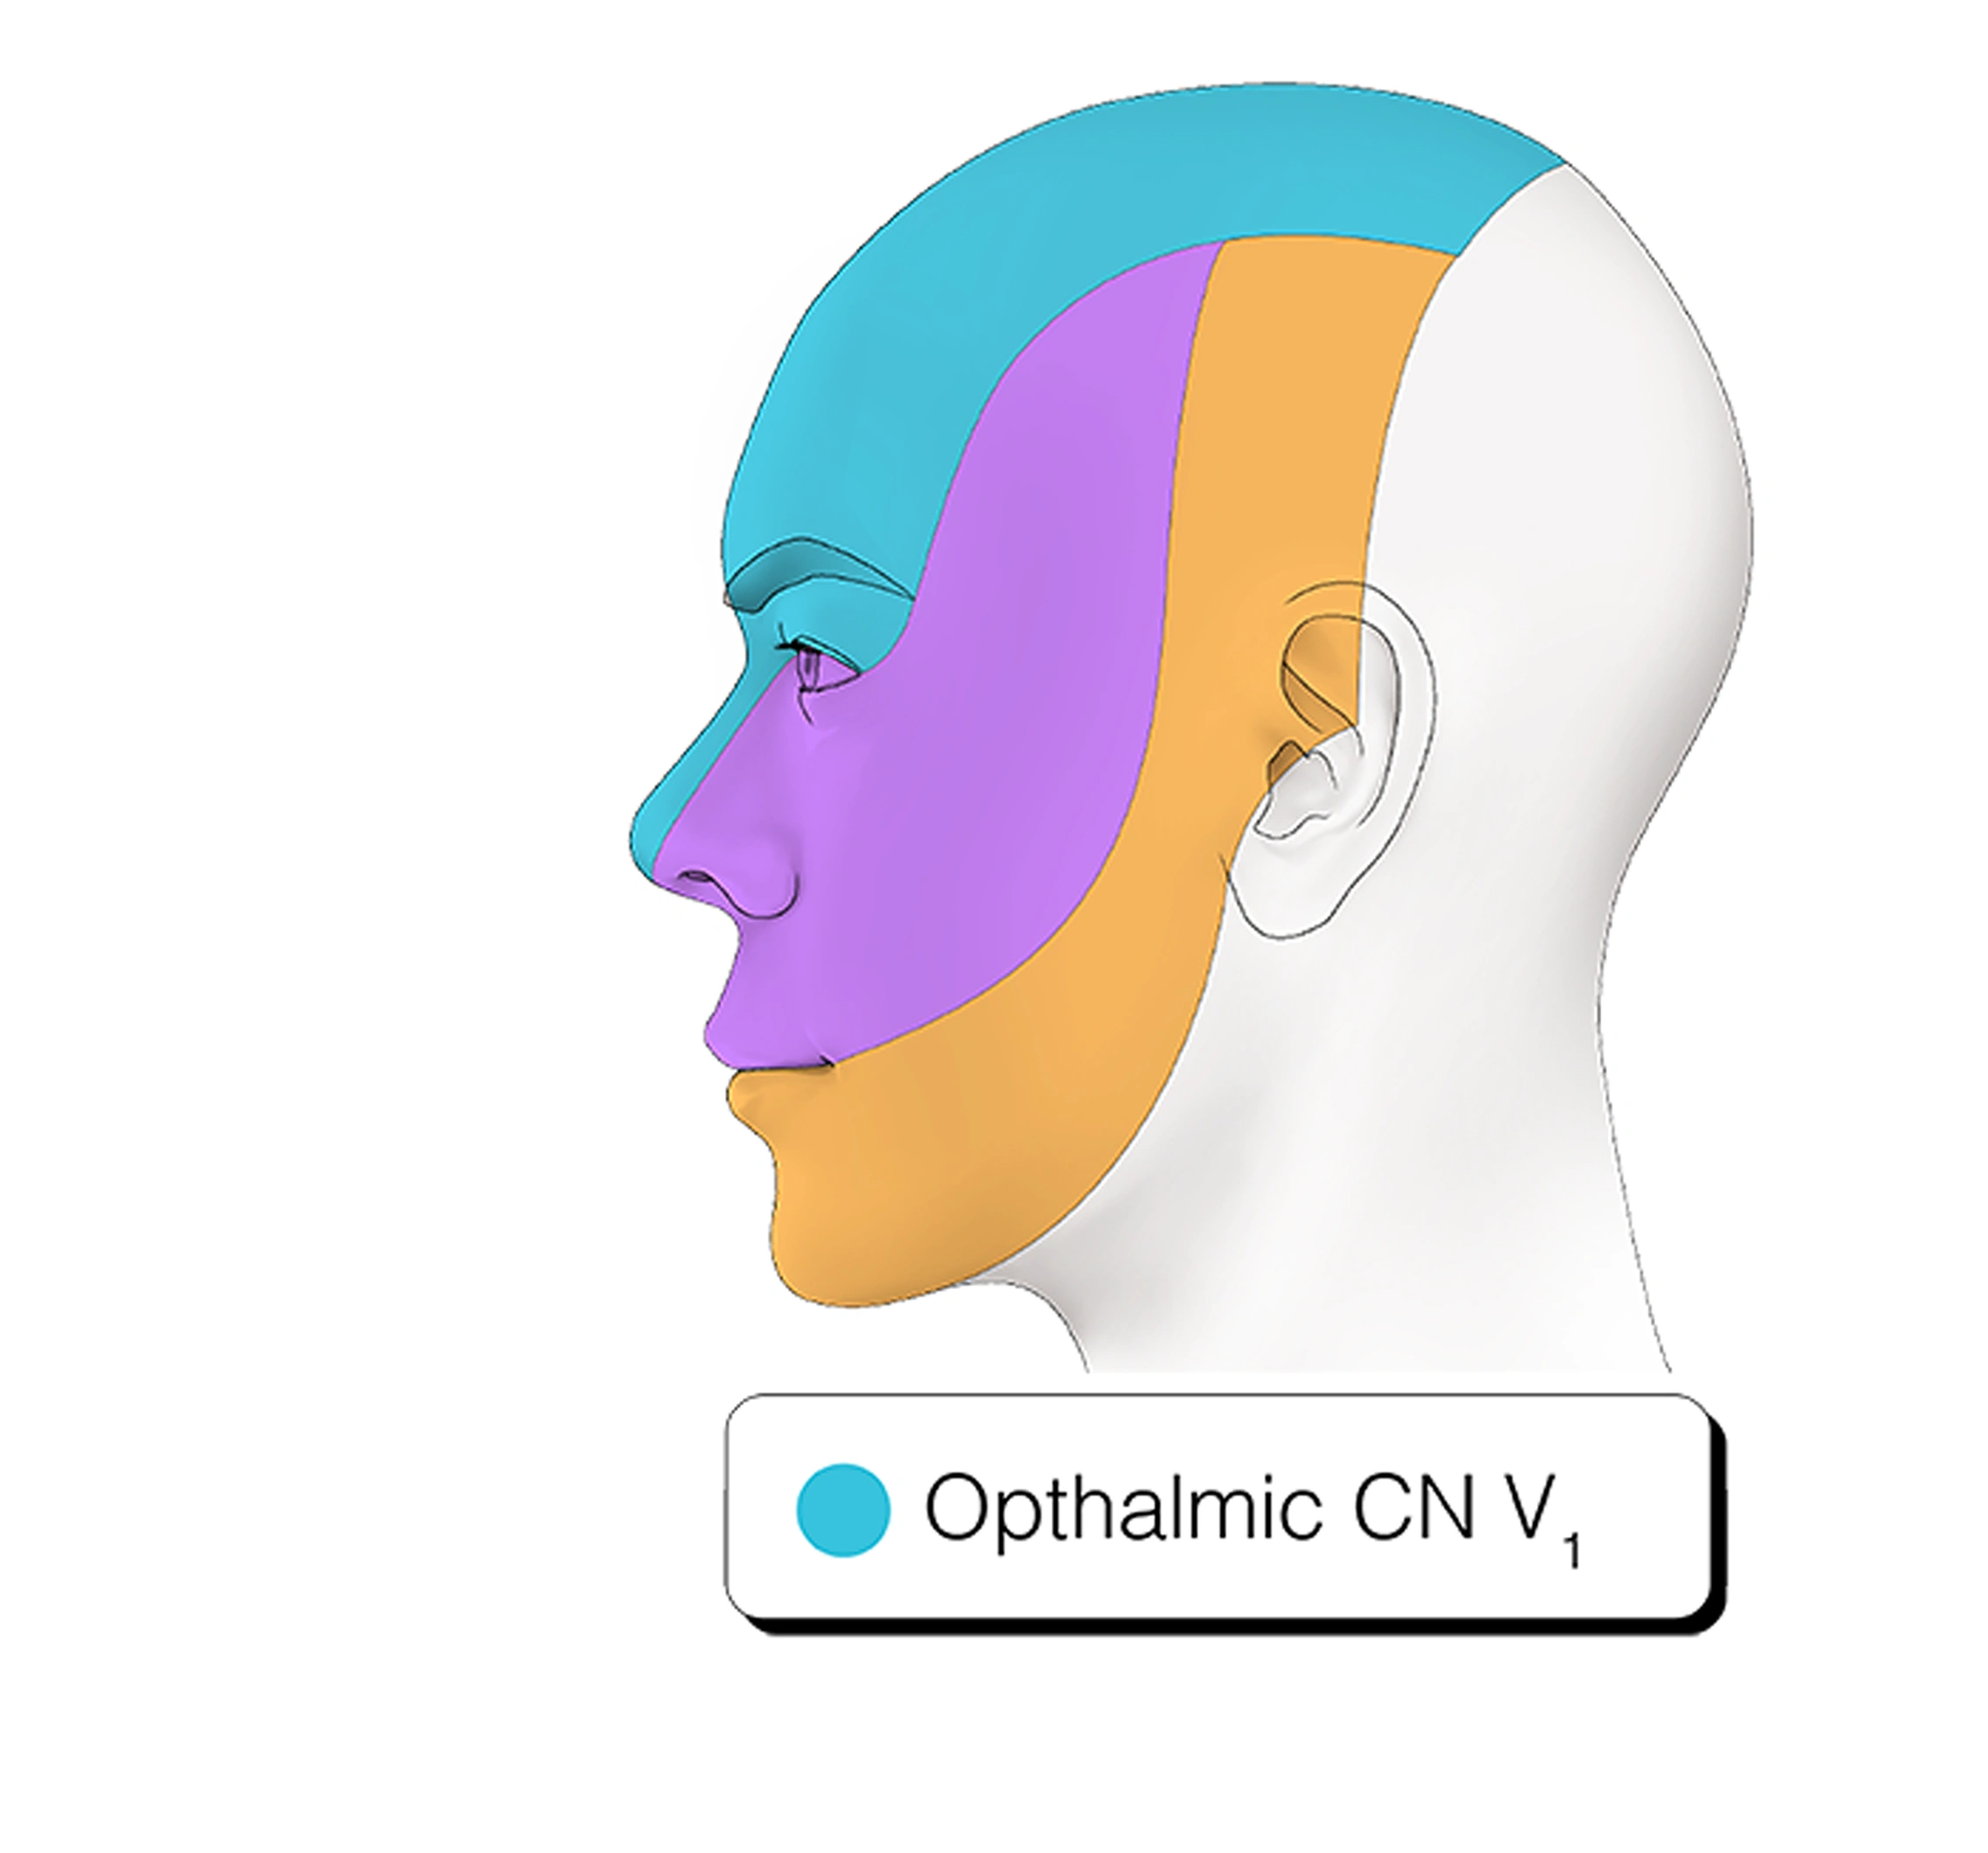 Figure 14. Cranial Nerve V1 - Ophthalmic Nerve